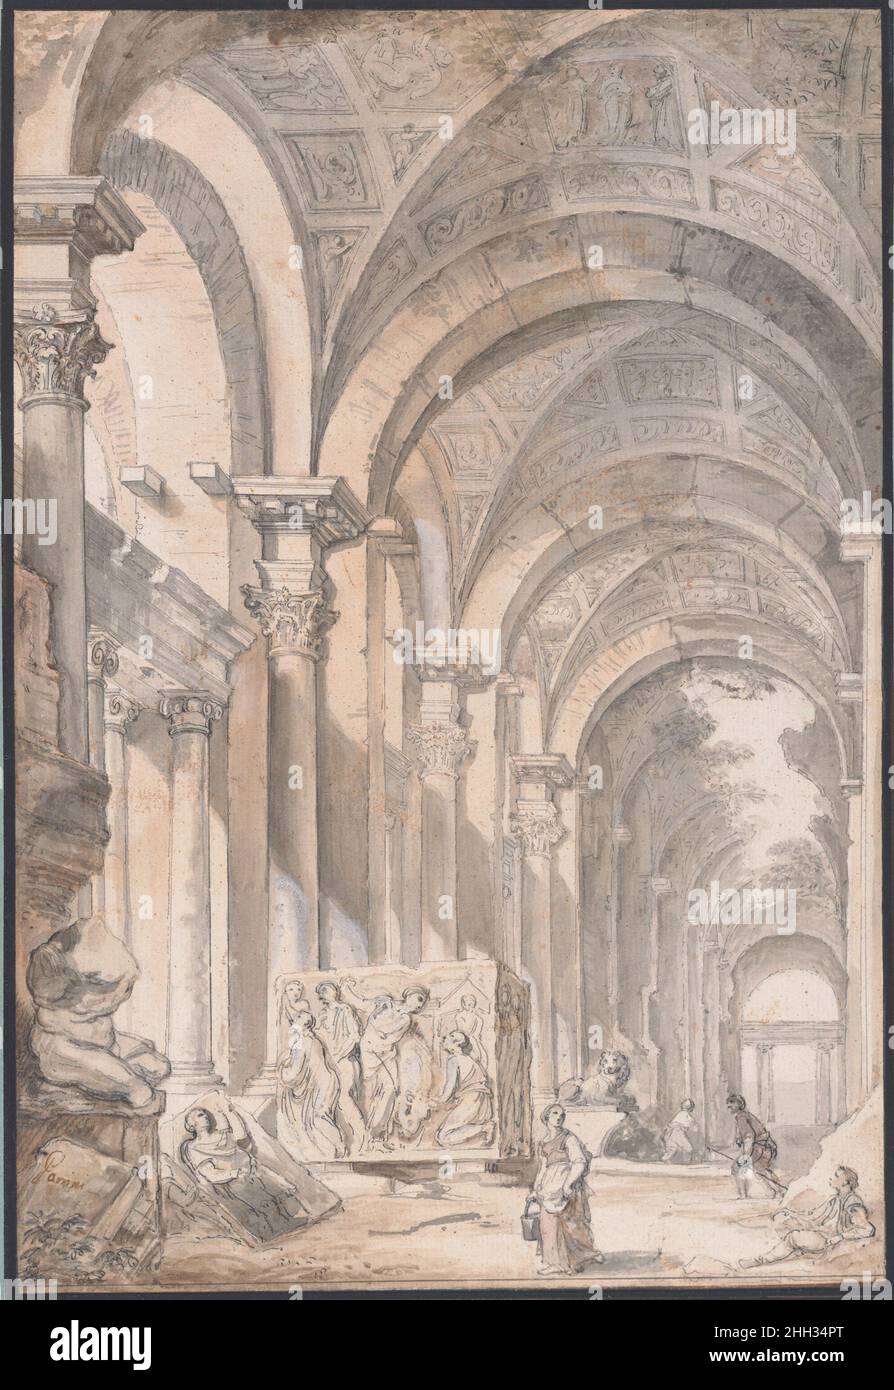 capriccio Arquitectónico con Figuras y Antigüedades –65 Giovanni  Paolo Panini Giovanni Paolo Panini fue un pintor y dibujante especializado  en escenas arquitectónicas de Roma, tanto topográficas como inventadas. Fue  contratado por la